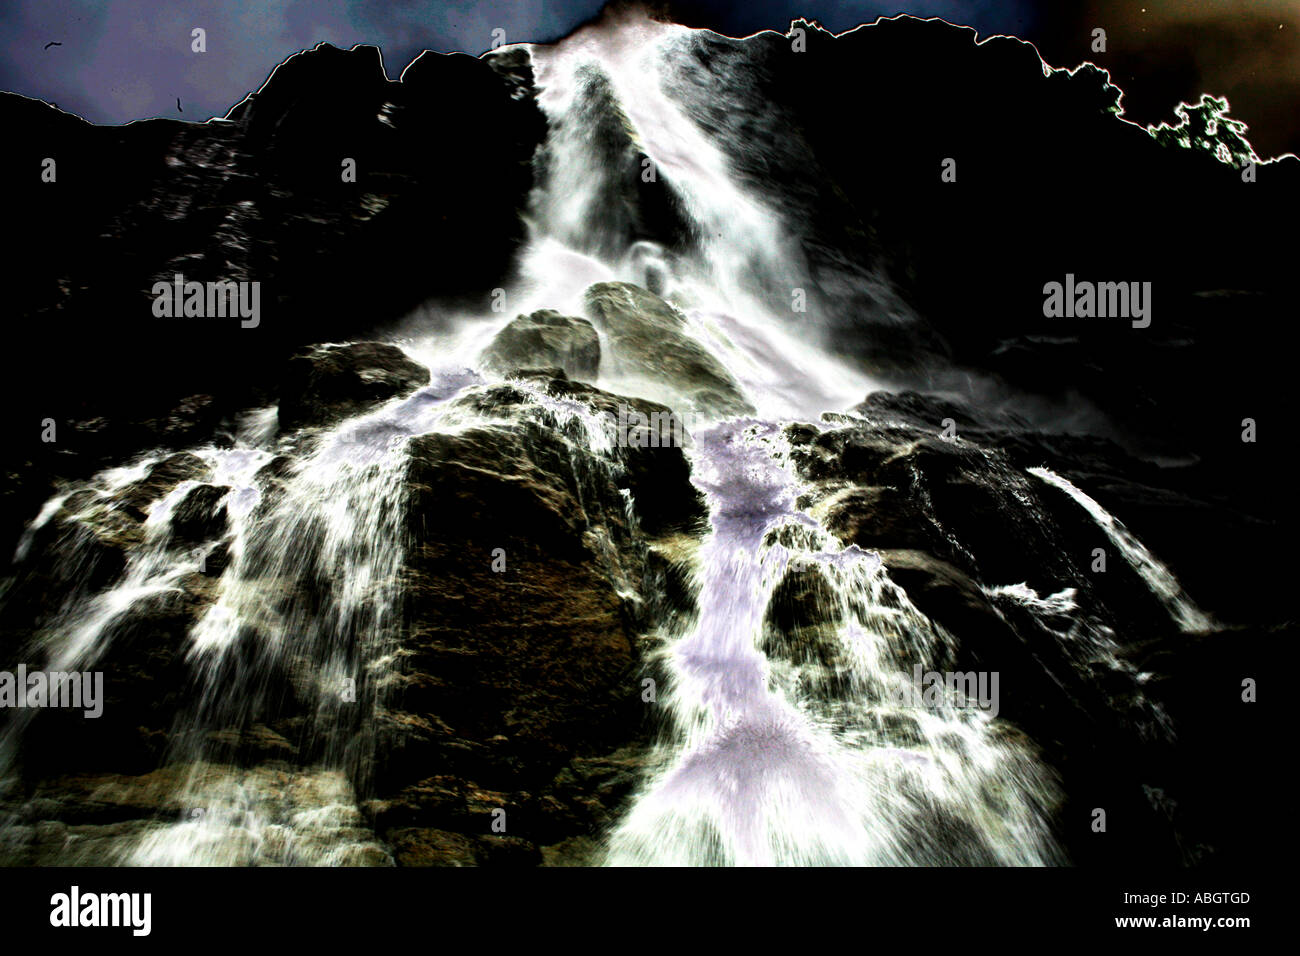 waterfall graphic Stock Photo